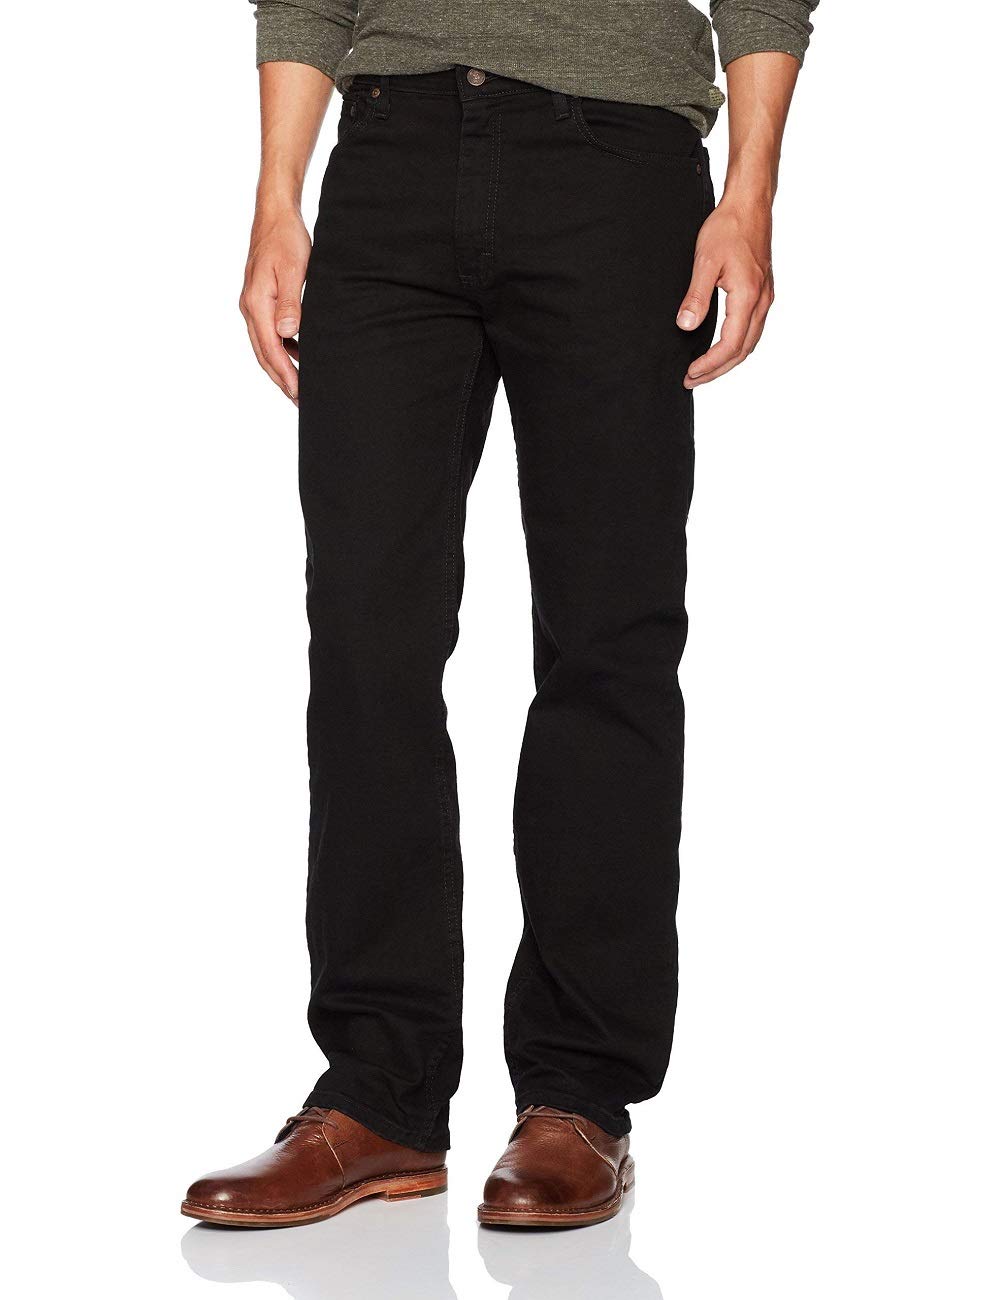 Wrangler Authentics Men's Big & Tall Regular Fit Comfort Flex Waist Jean, Black, 50W x 30L